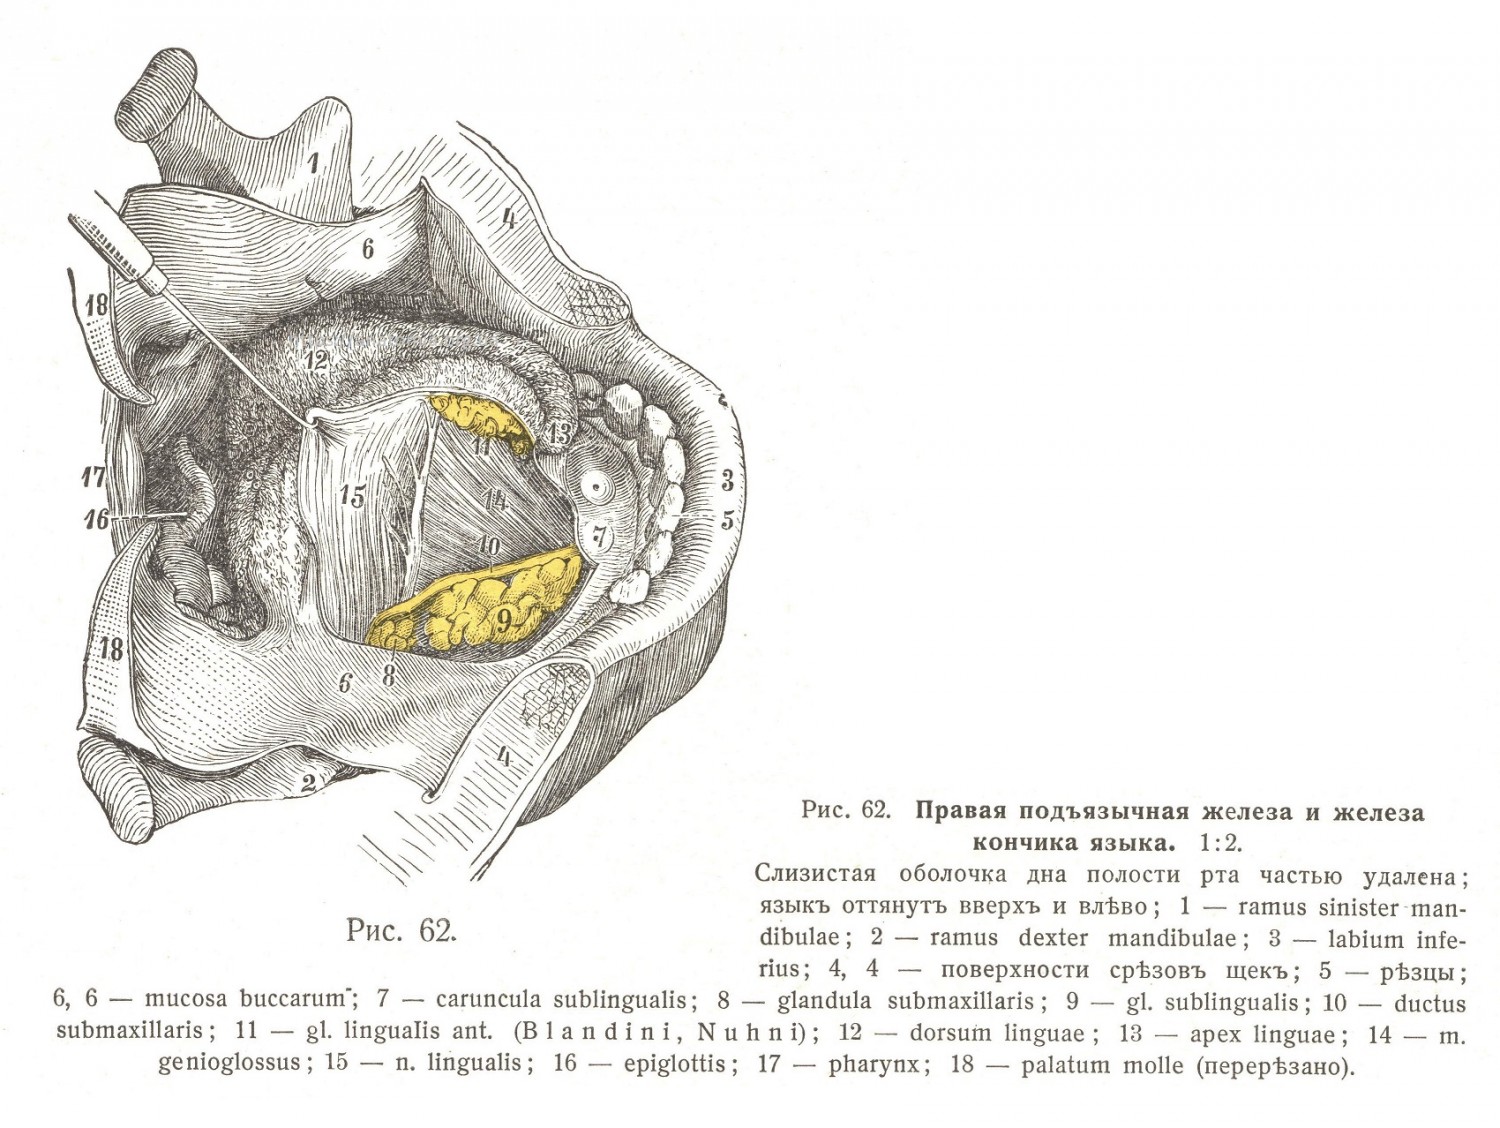 Подъязычная железа. Glandula sublingualis